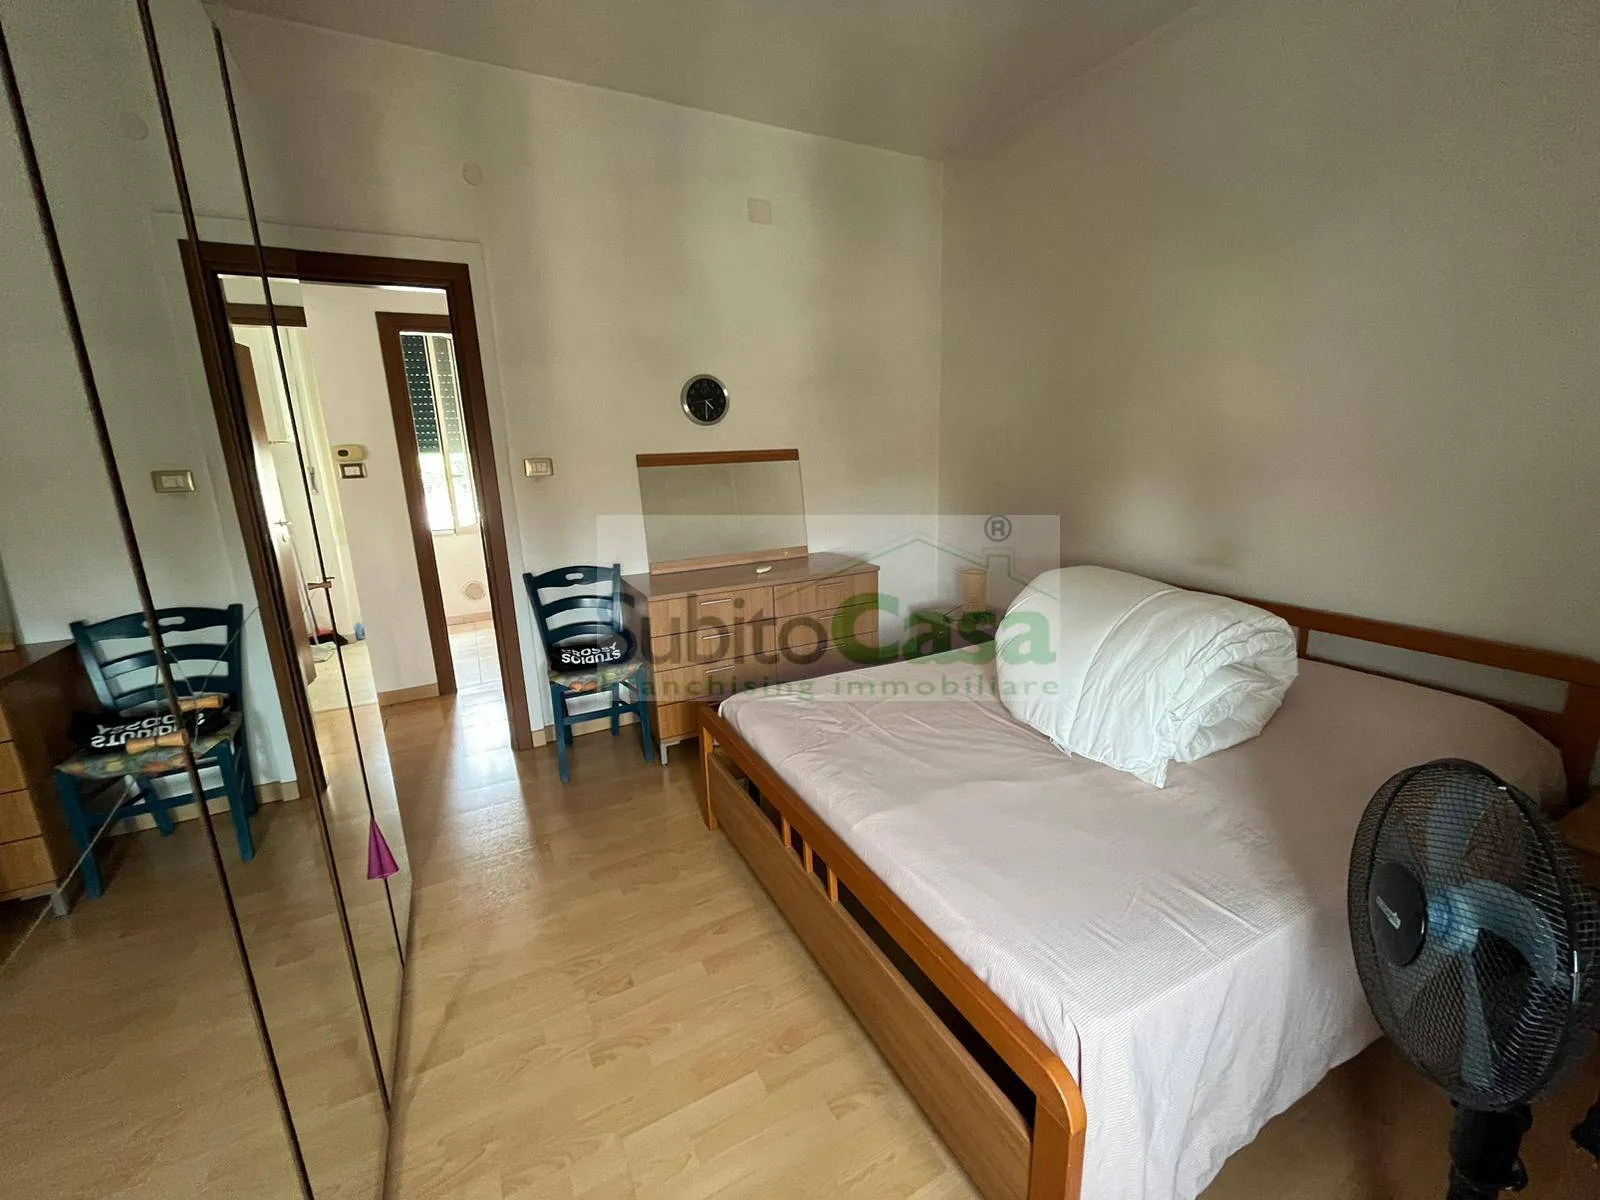 Immagine per Appartamento in affitto a Chieti Via Fratelli Palizzi